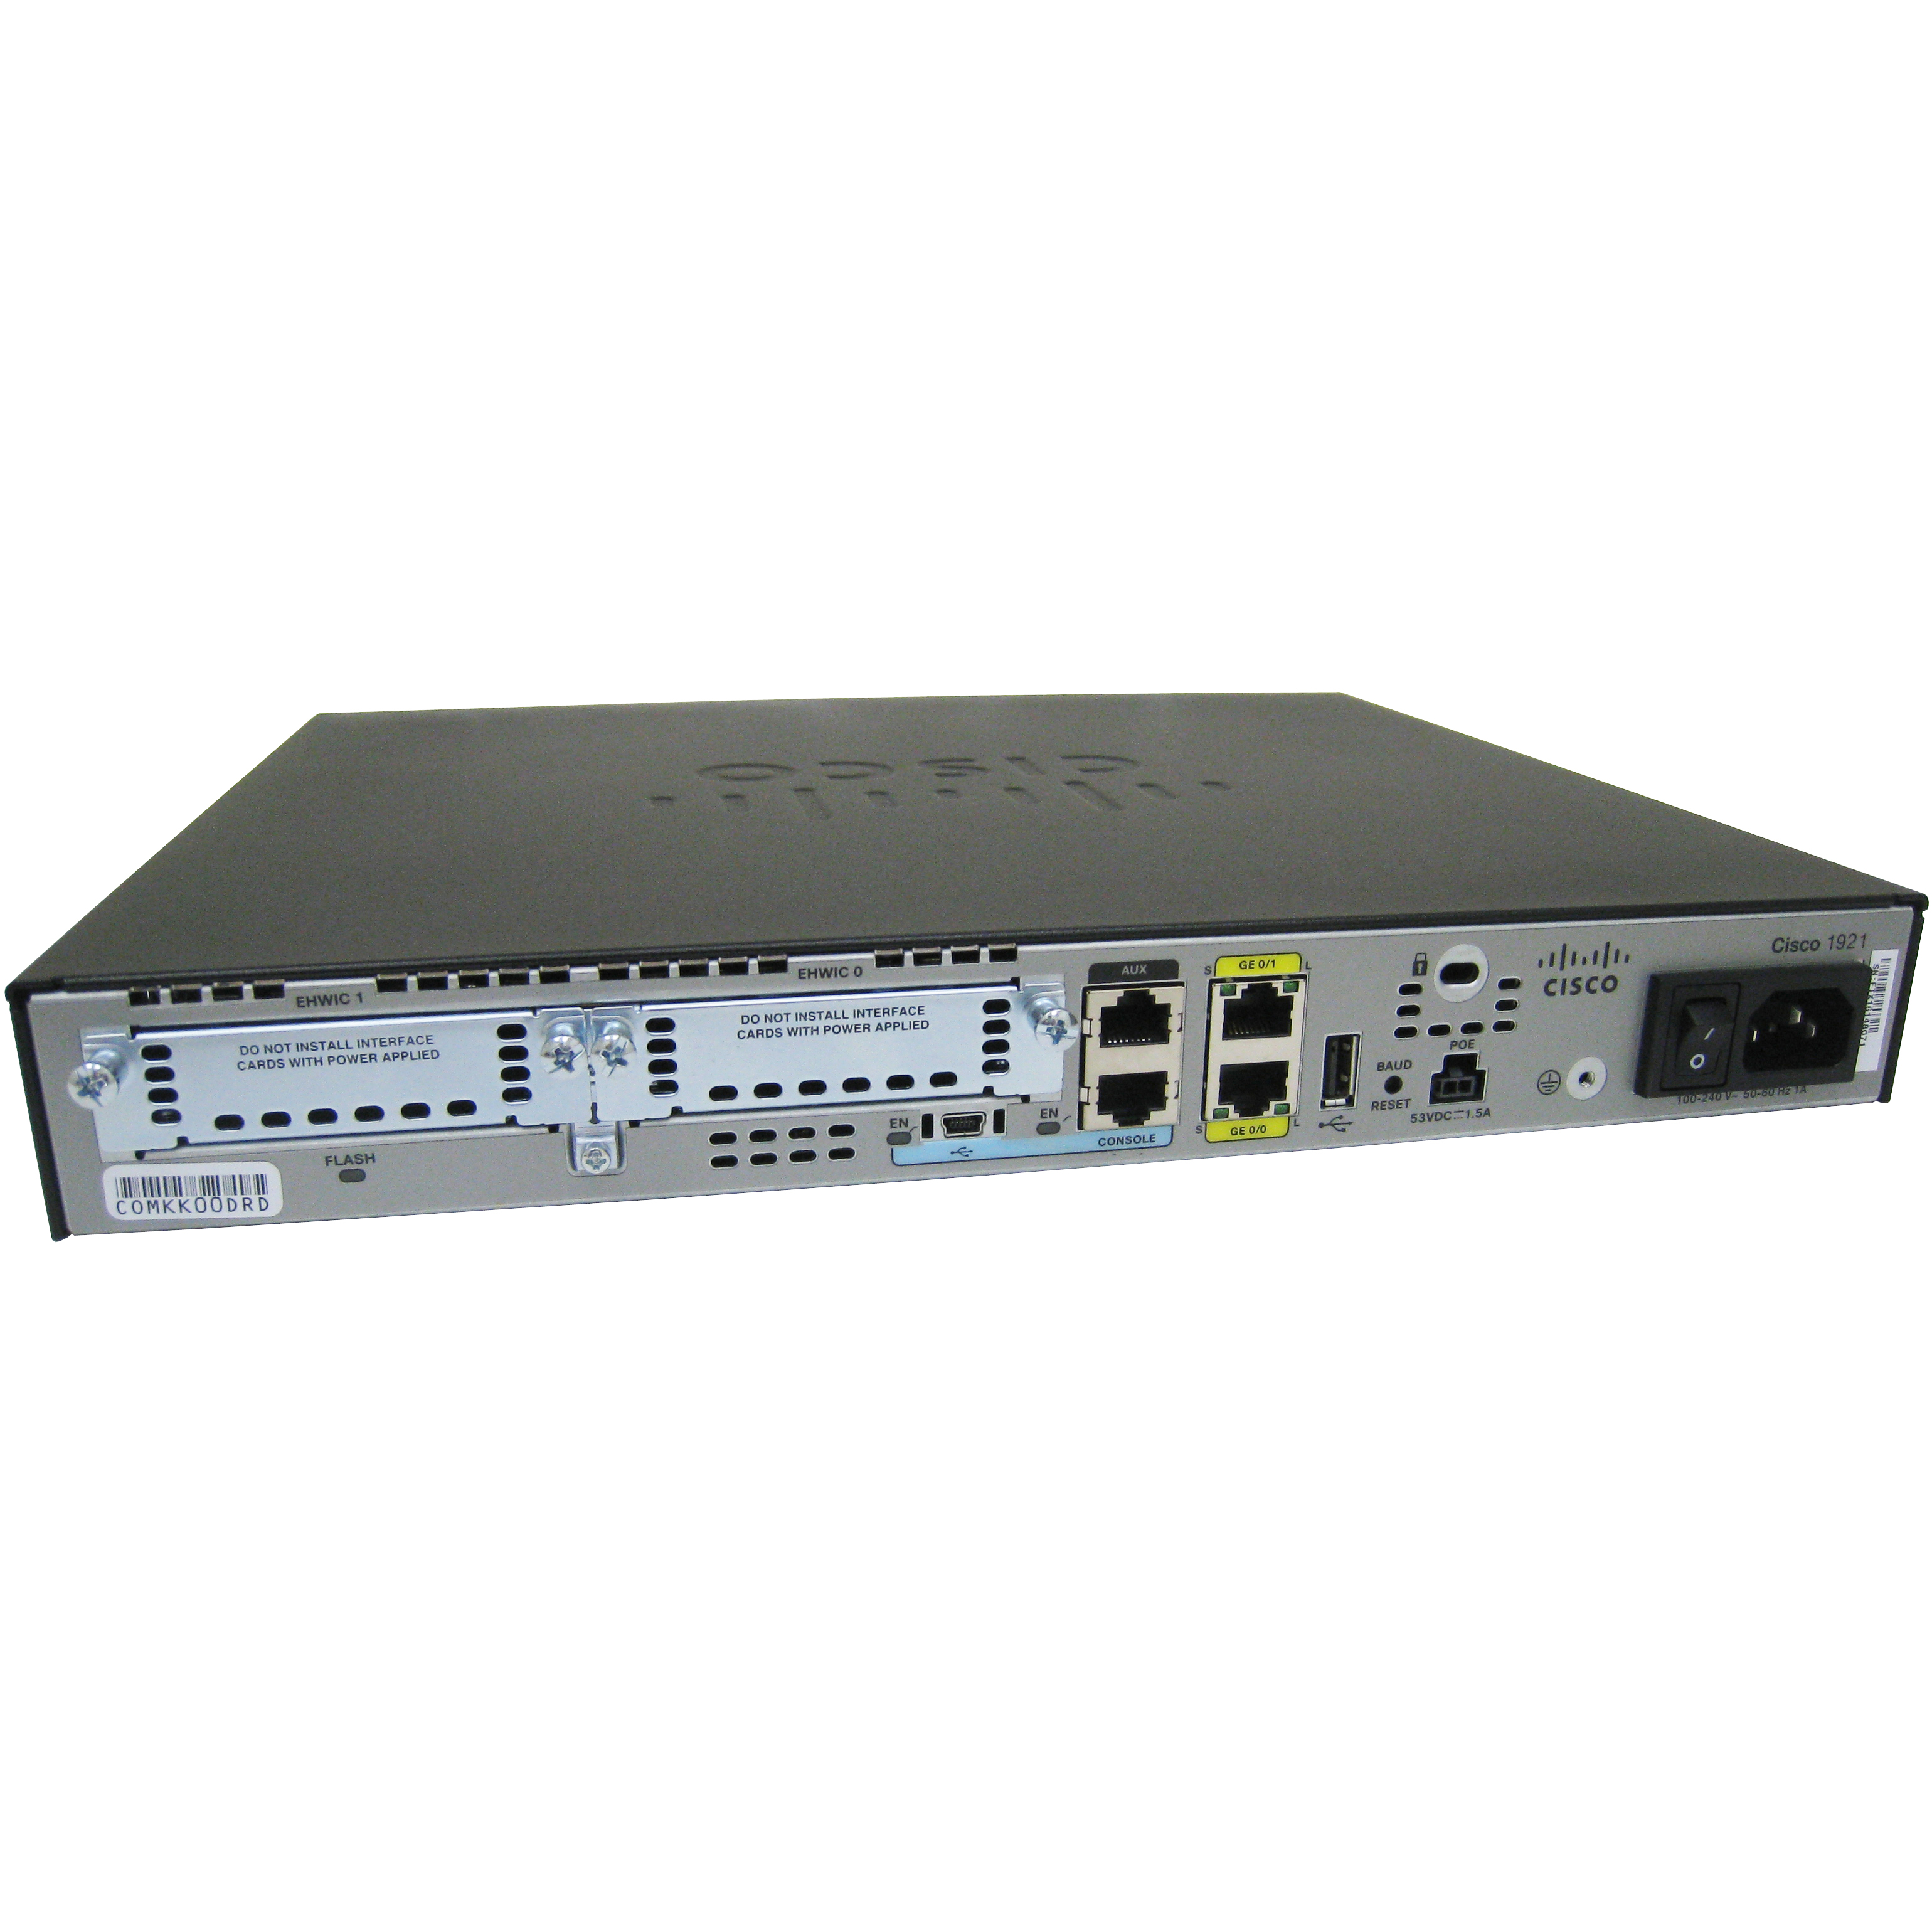 Cisco CISCO1921-ADSL2/K9